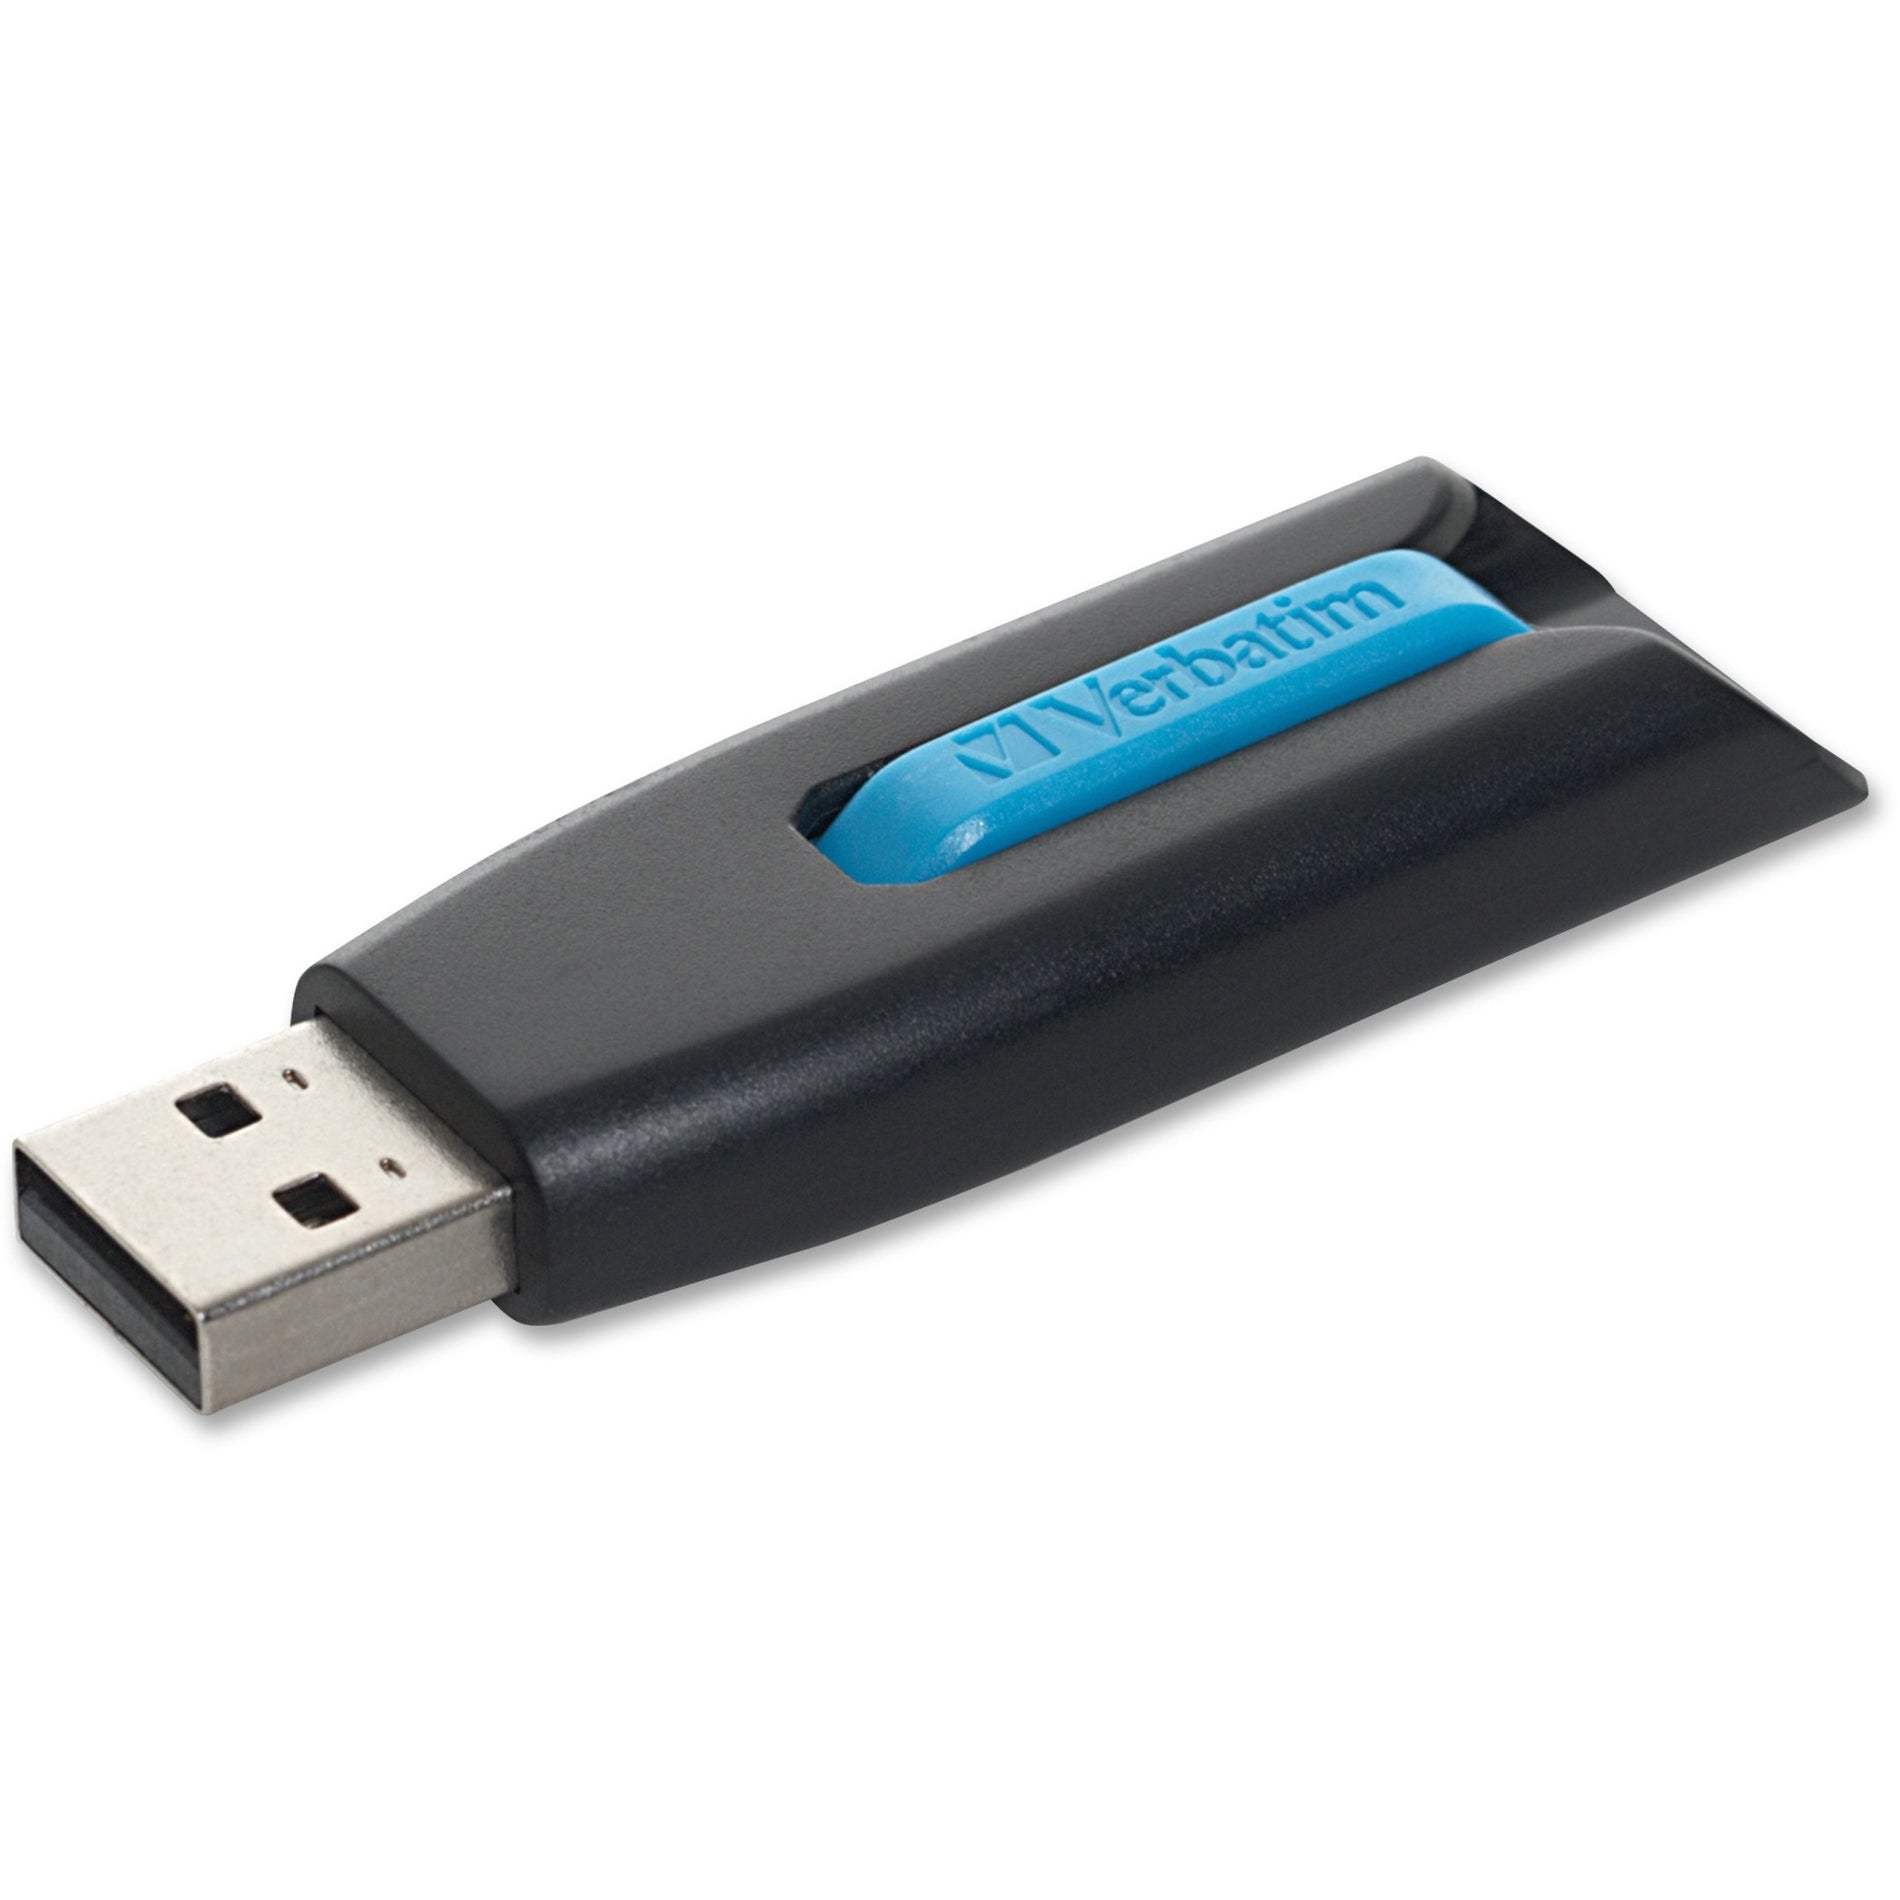 マイクロバン 49176 Store 'n' Go V3 USB ドライブ、16GB、青  ブランド名：マイクロバン